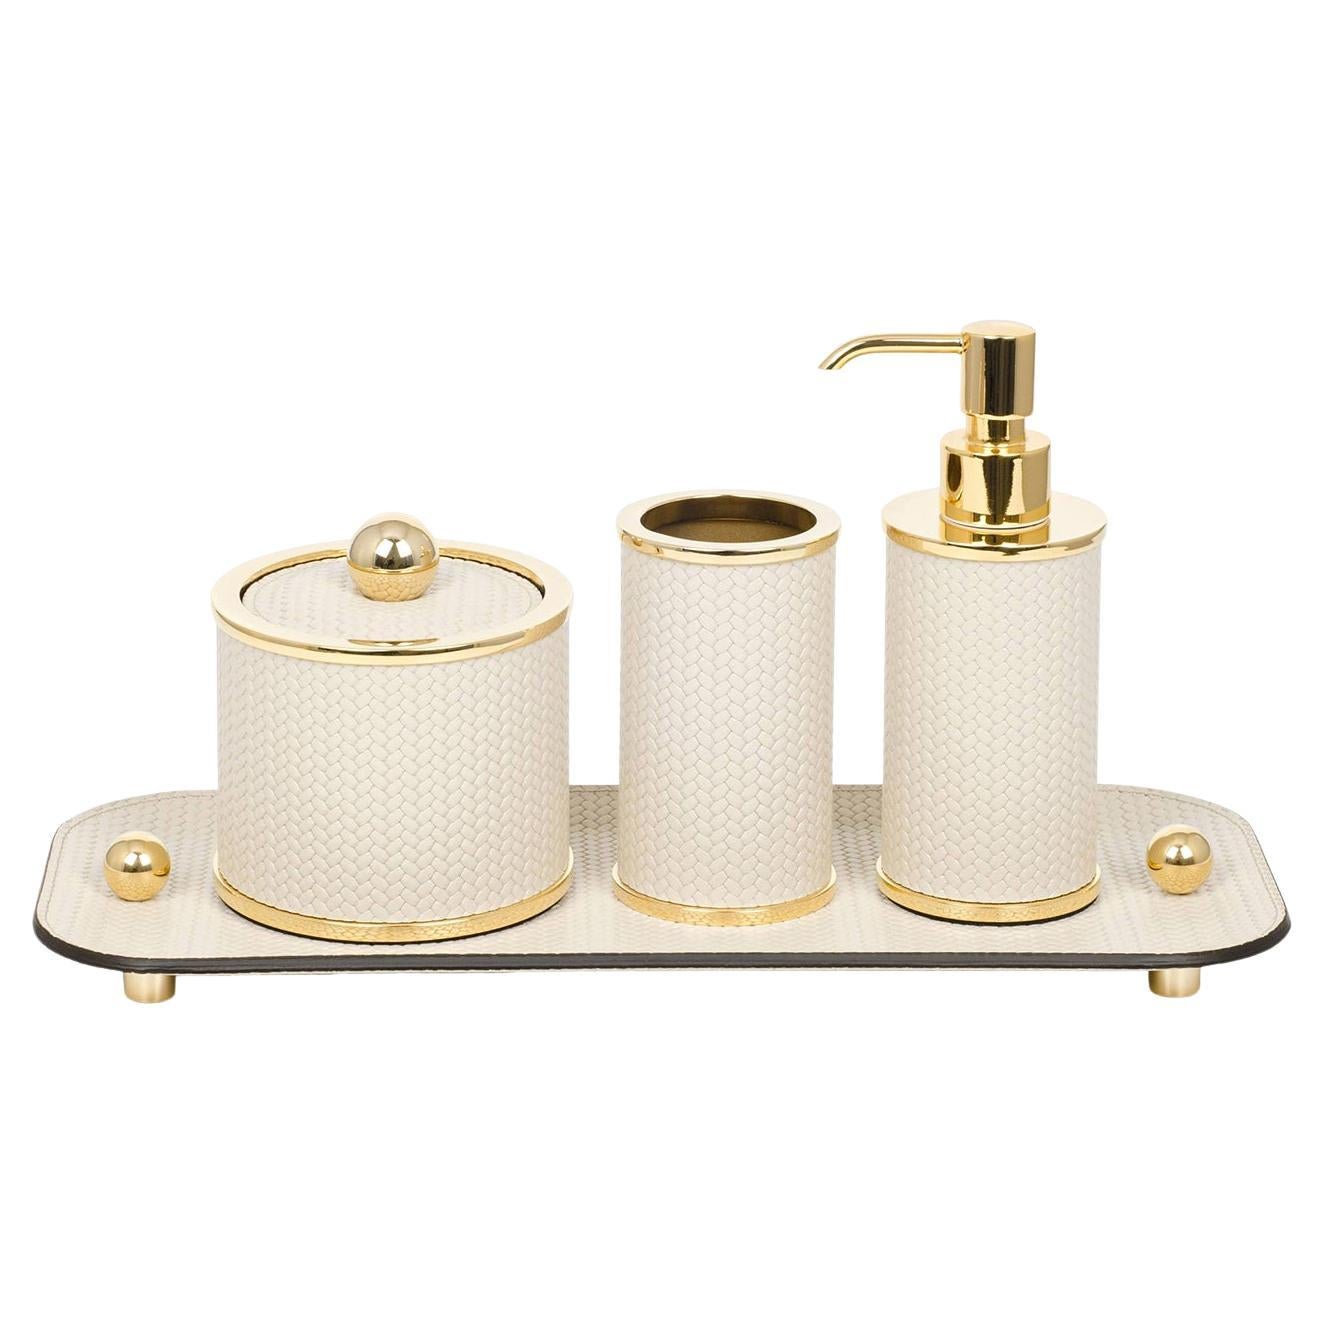 Olimpia 4-teiliges rundes Bad-Set aus goldenem/beigefarbenem Leder für das runde Badezimmer